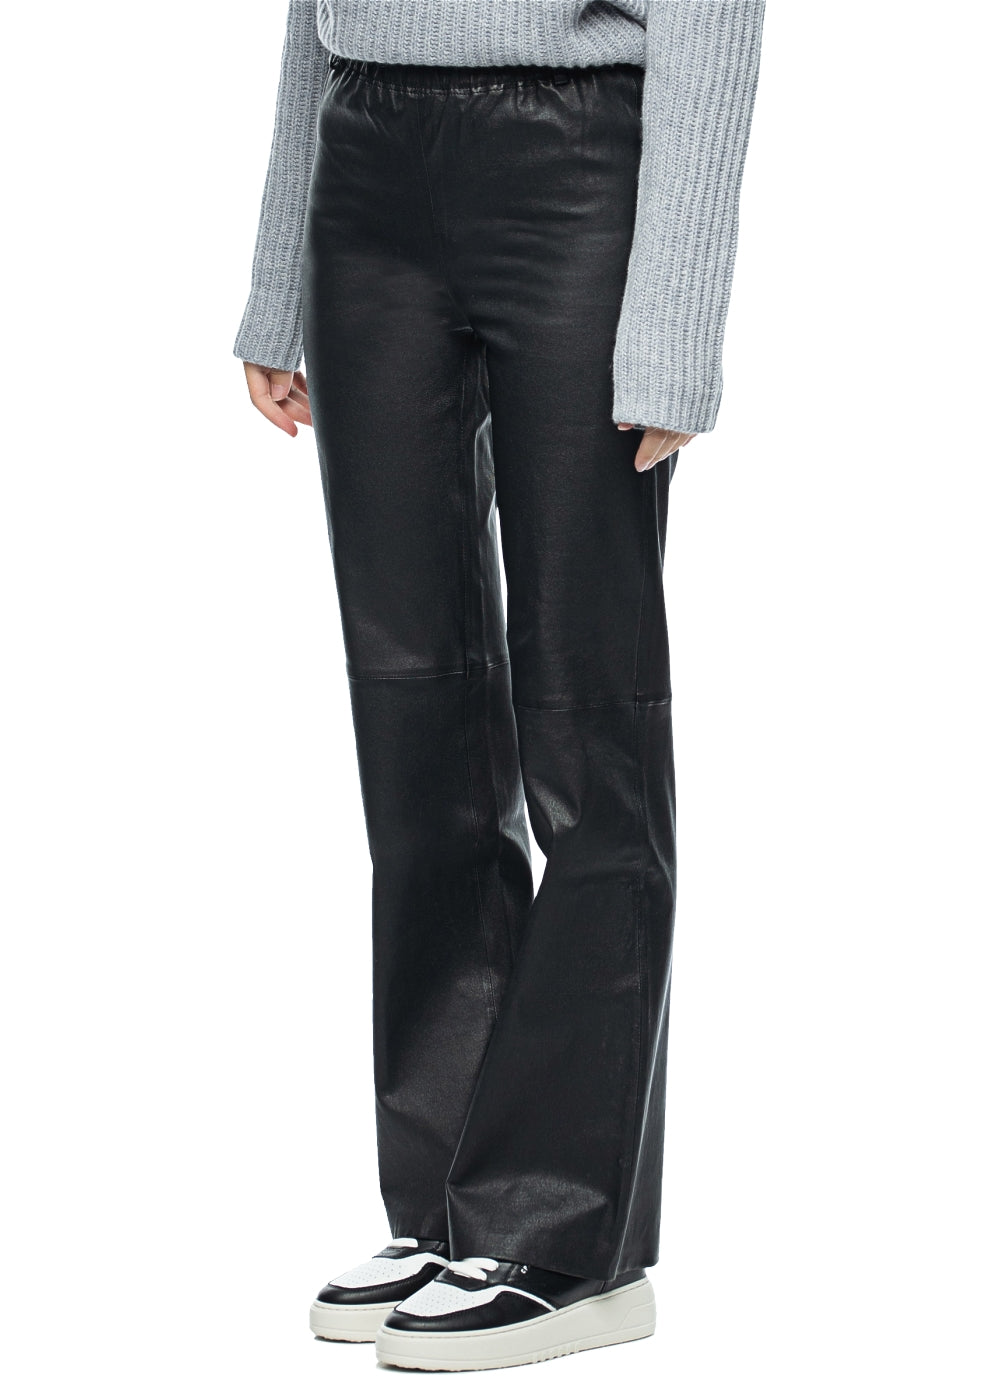 Arma Lederhose Rihanna in schwarz. Modische Damen Lederhose in weichen Glattleder von Arma Leder online kaufen. Schlupfhose mit modisch weiter Beinweite aus der neuen Arma Leder Kollektion.